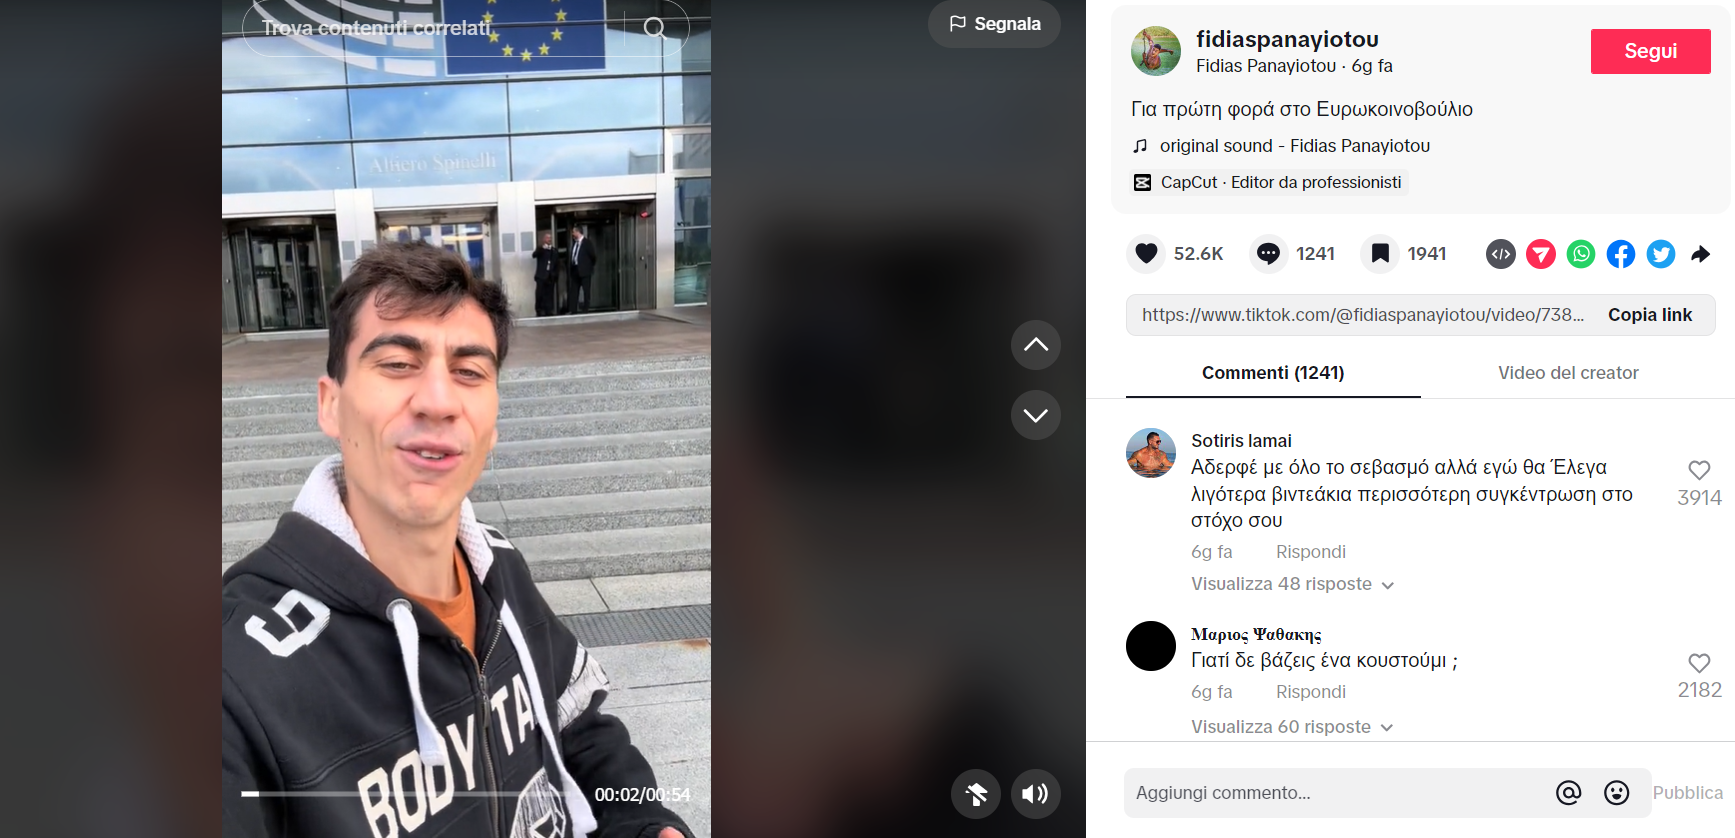 Uno degli ultimi video che ritraggono lo youtuber-europarlamentare Fidias nell'atto di entrare nel parlamento europeo, a Bruxelles